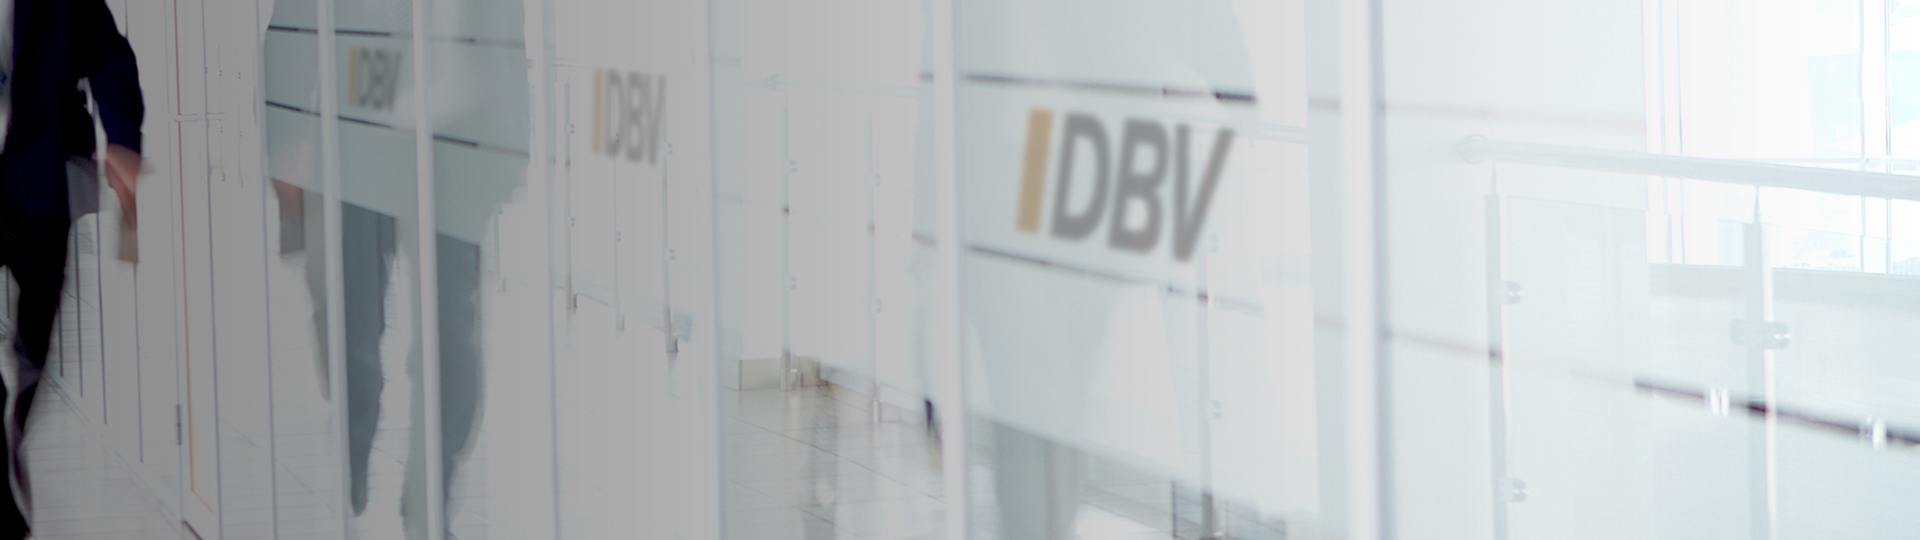 Wichtige Versicherungen | DBV Köln Schneppenheim GmbH 